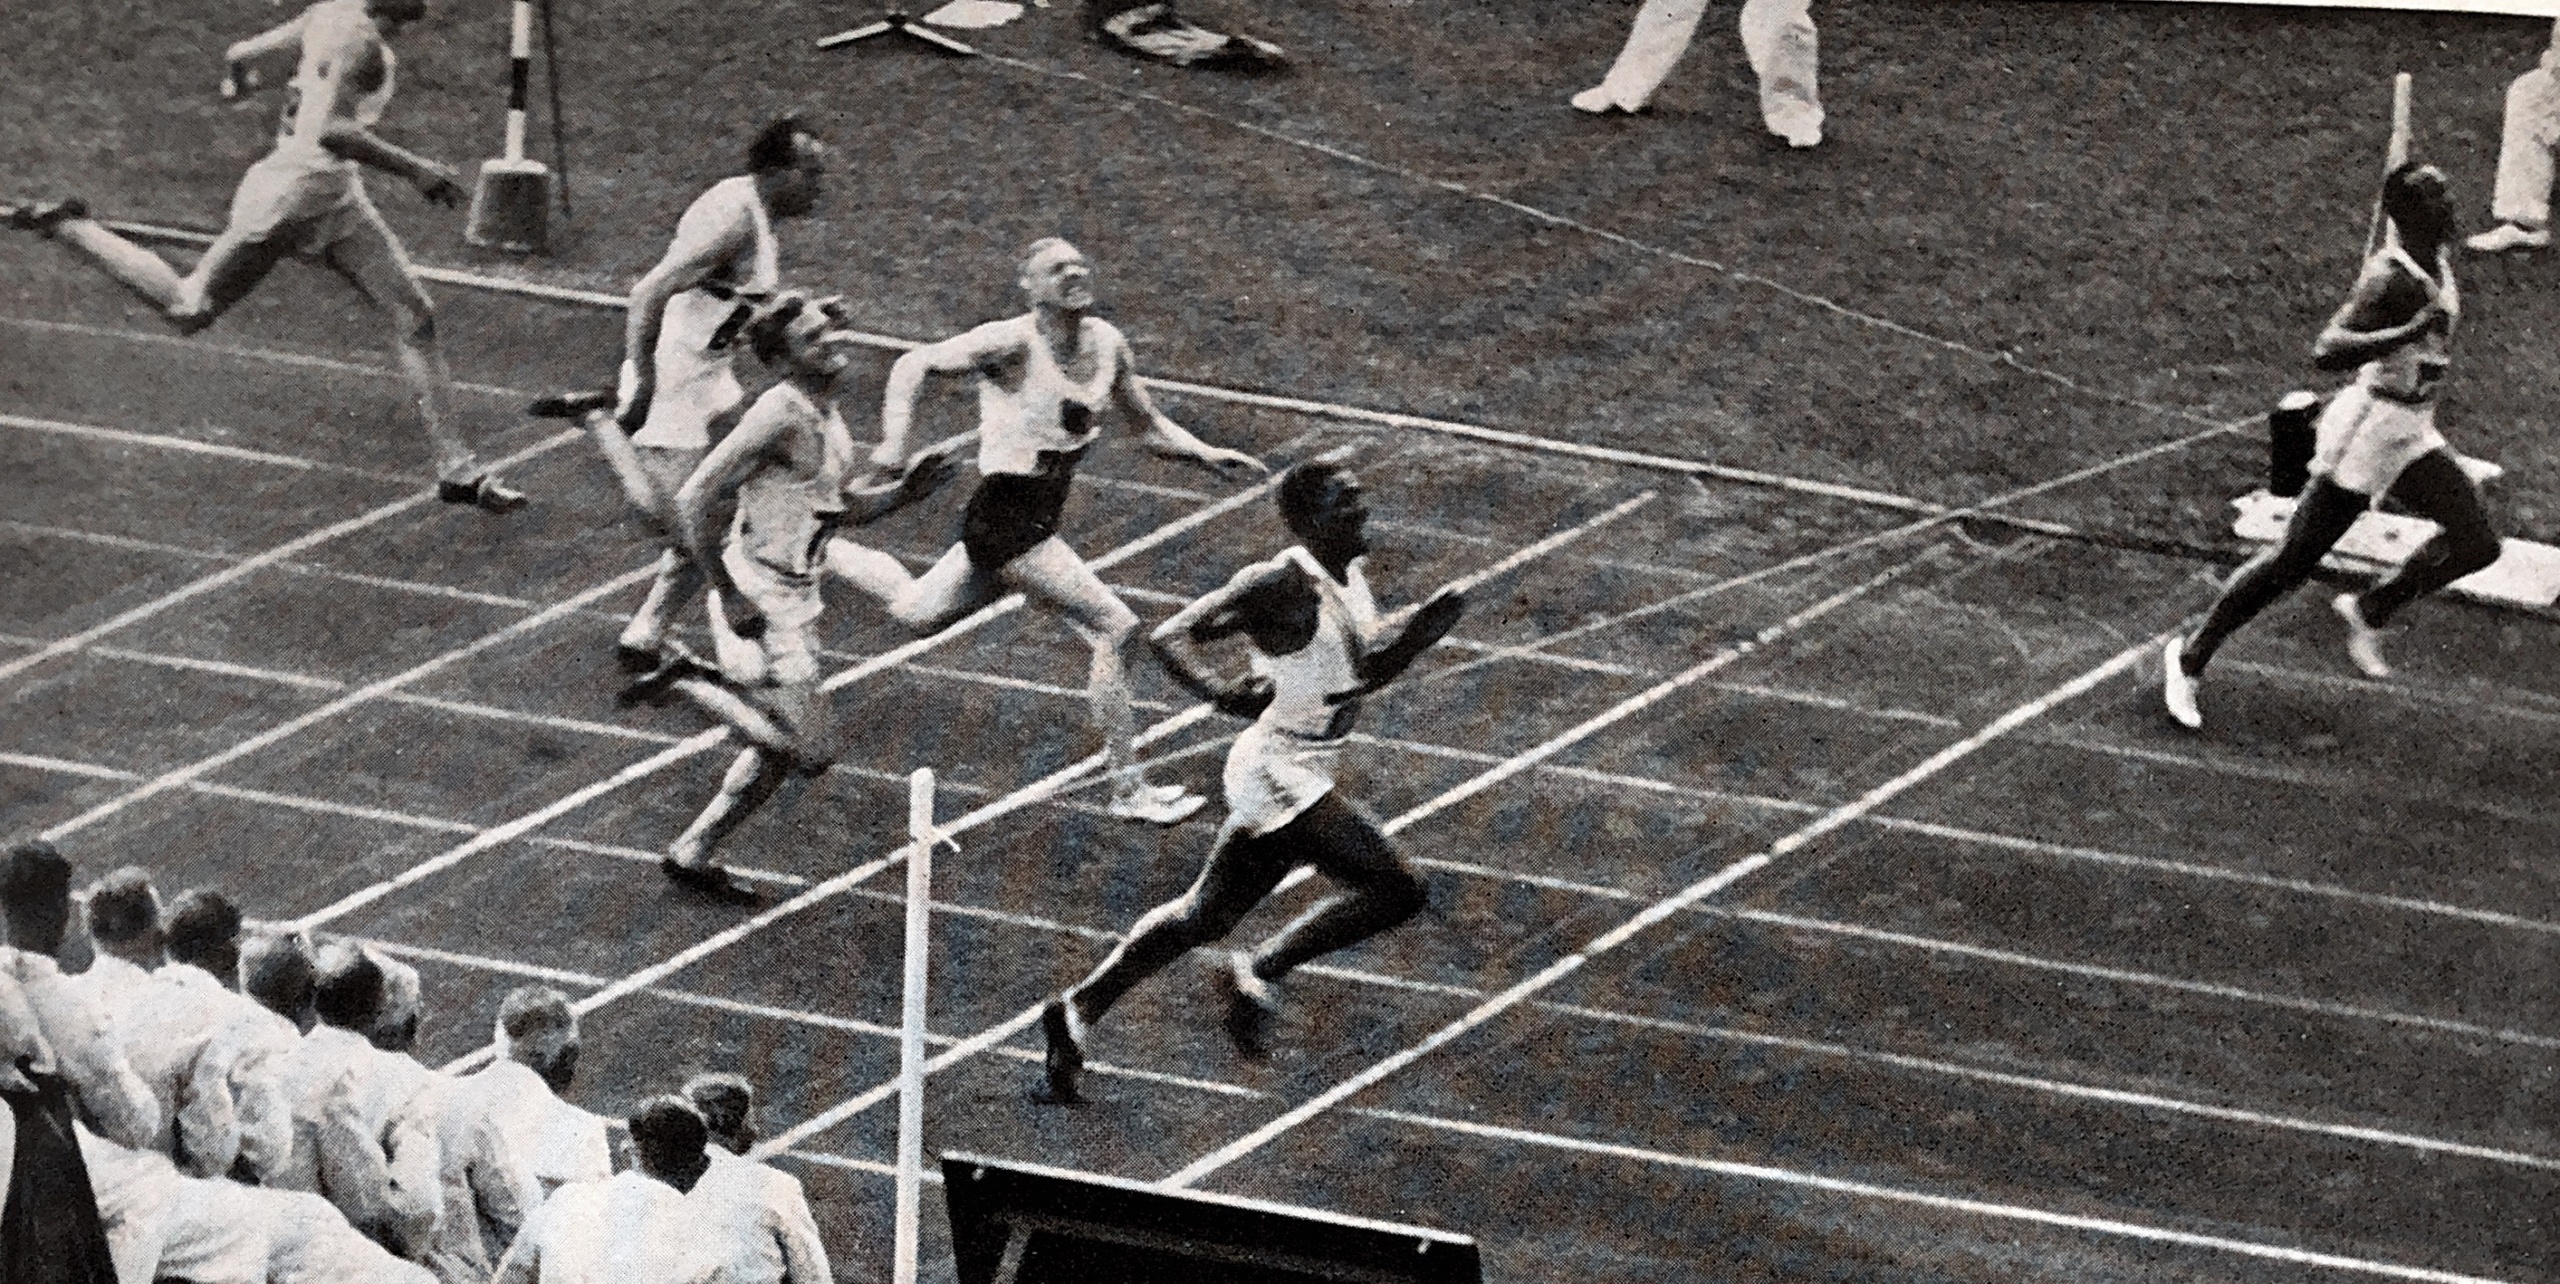 006  Owens finale 100 m 1936